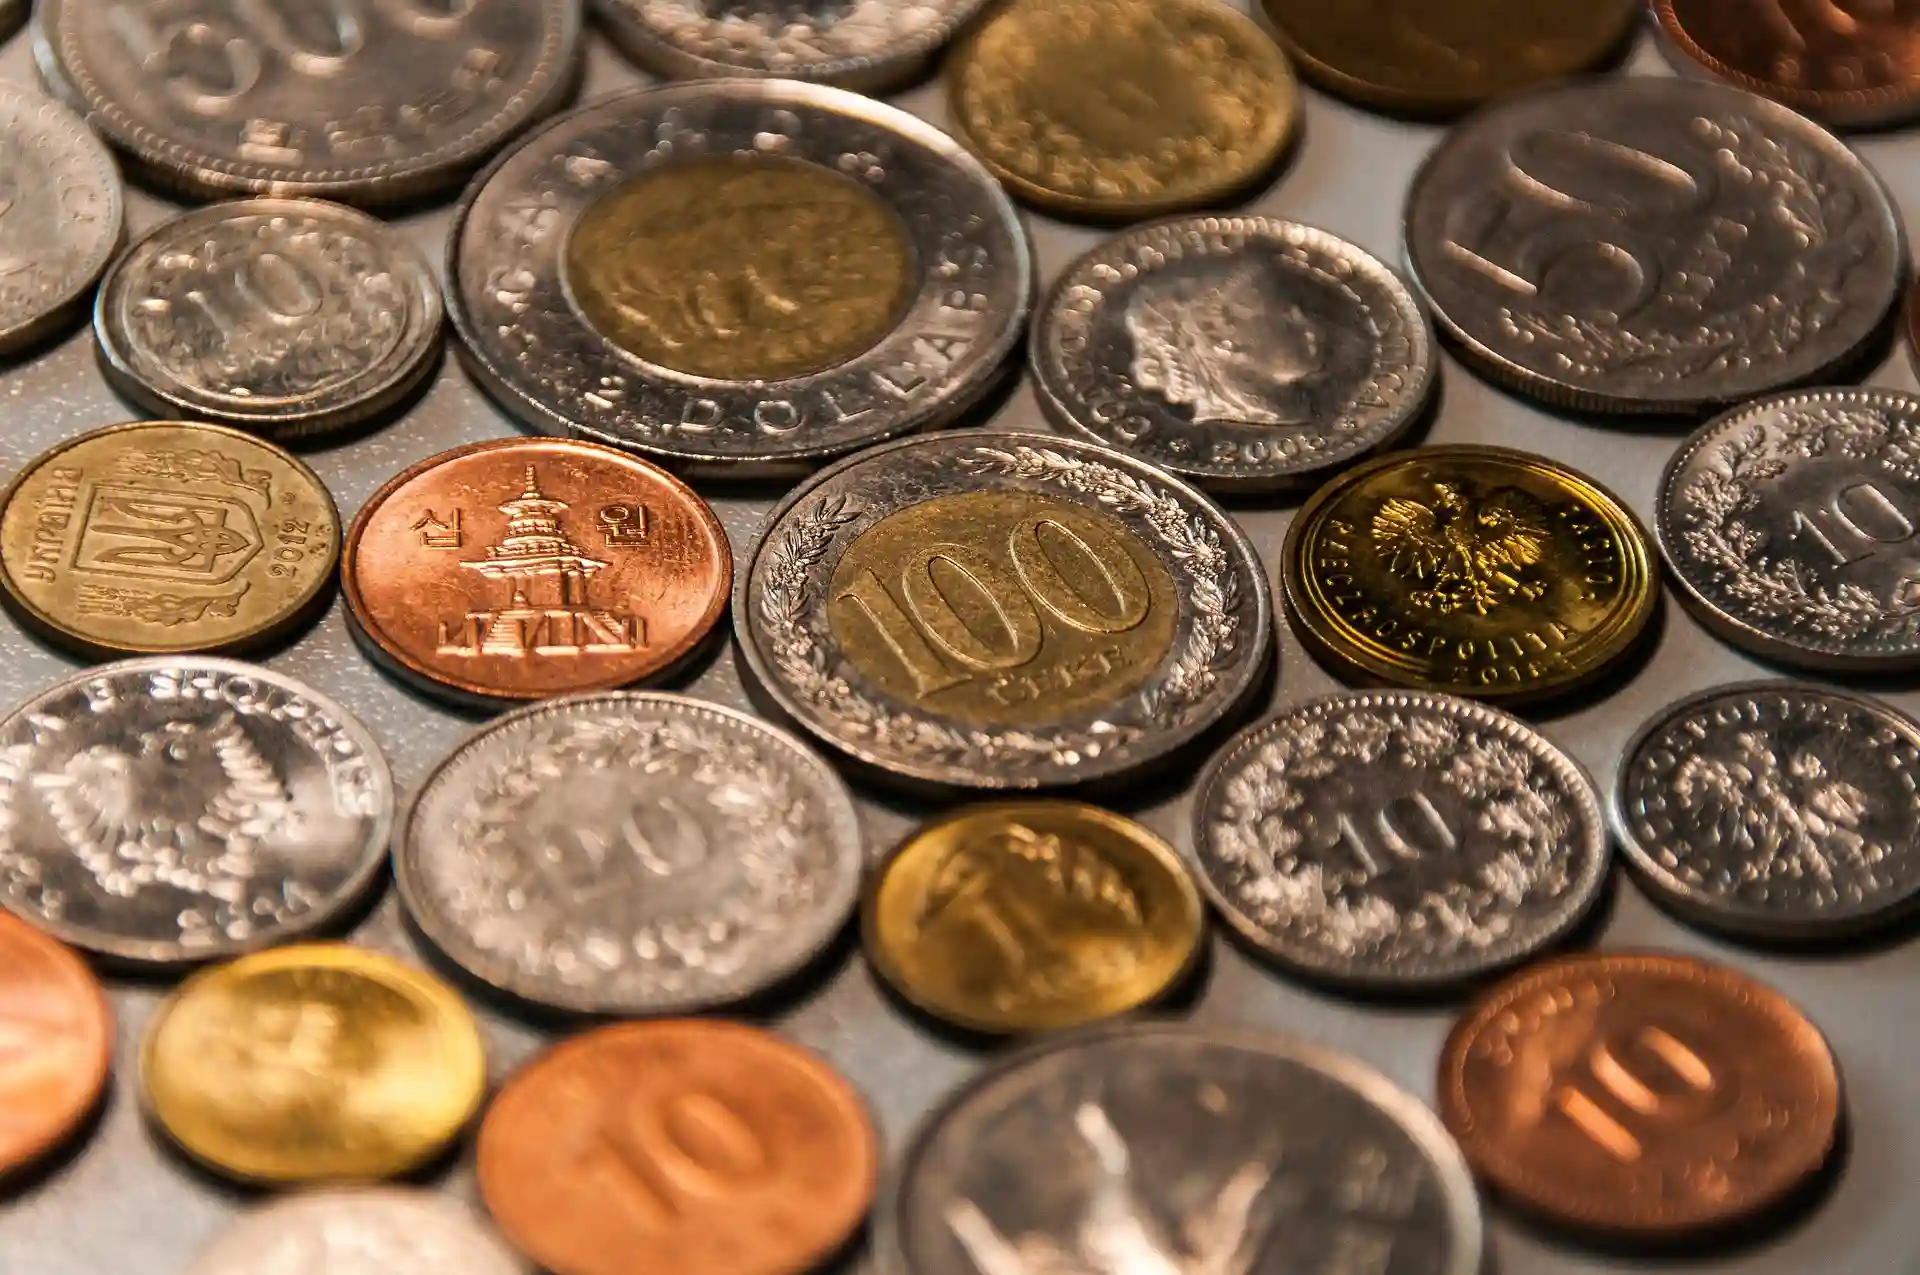 Les 3 pièces d’euros qui passionnent les numismates ?